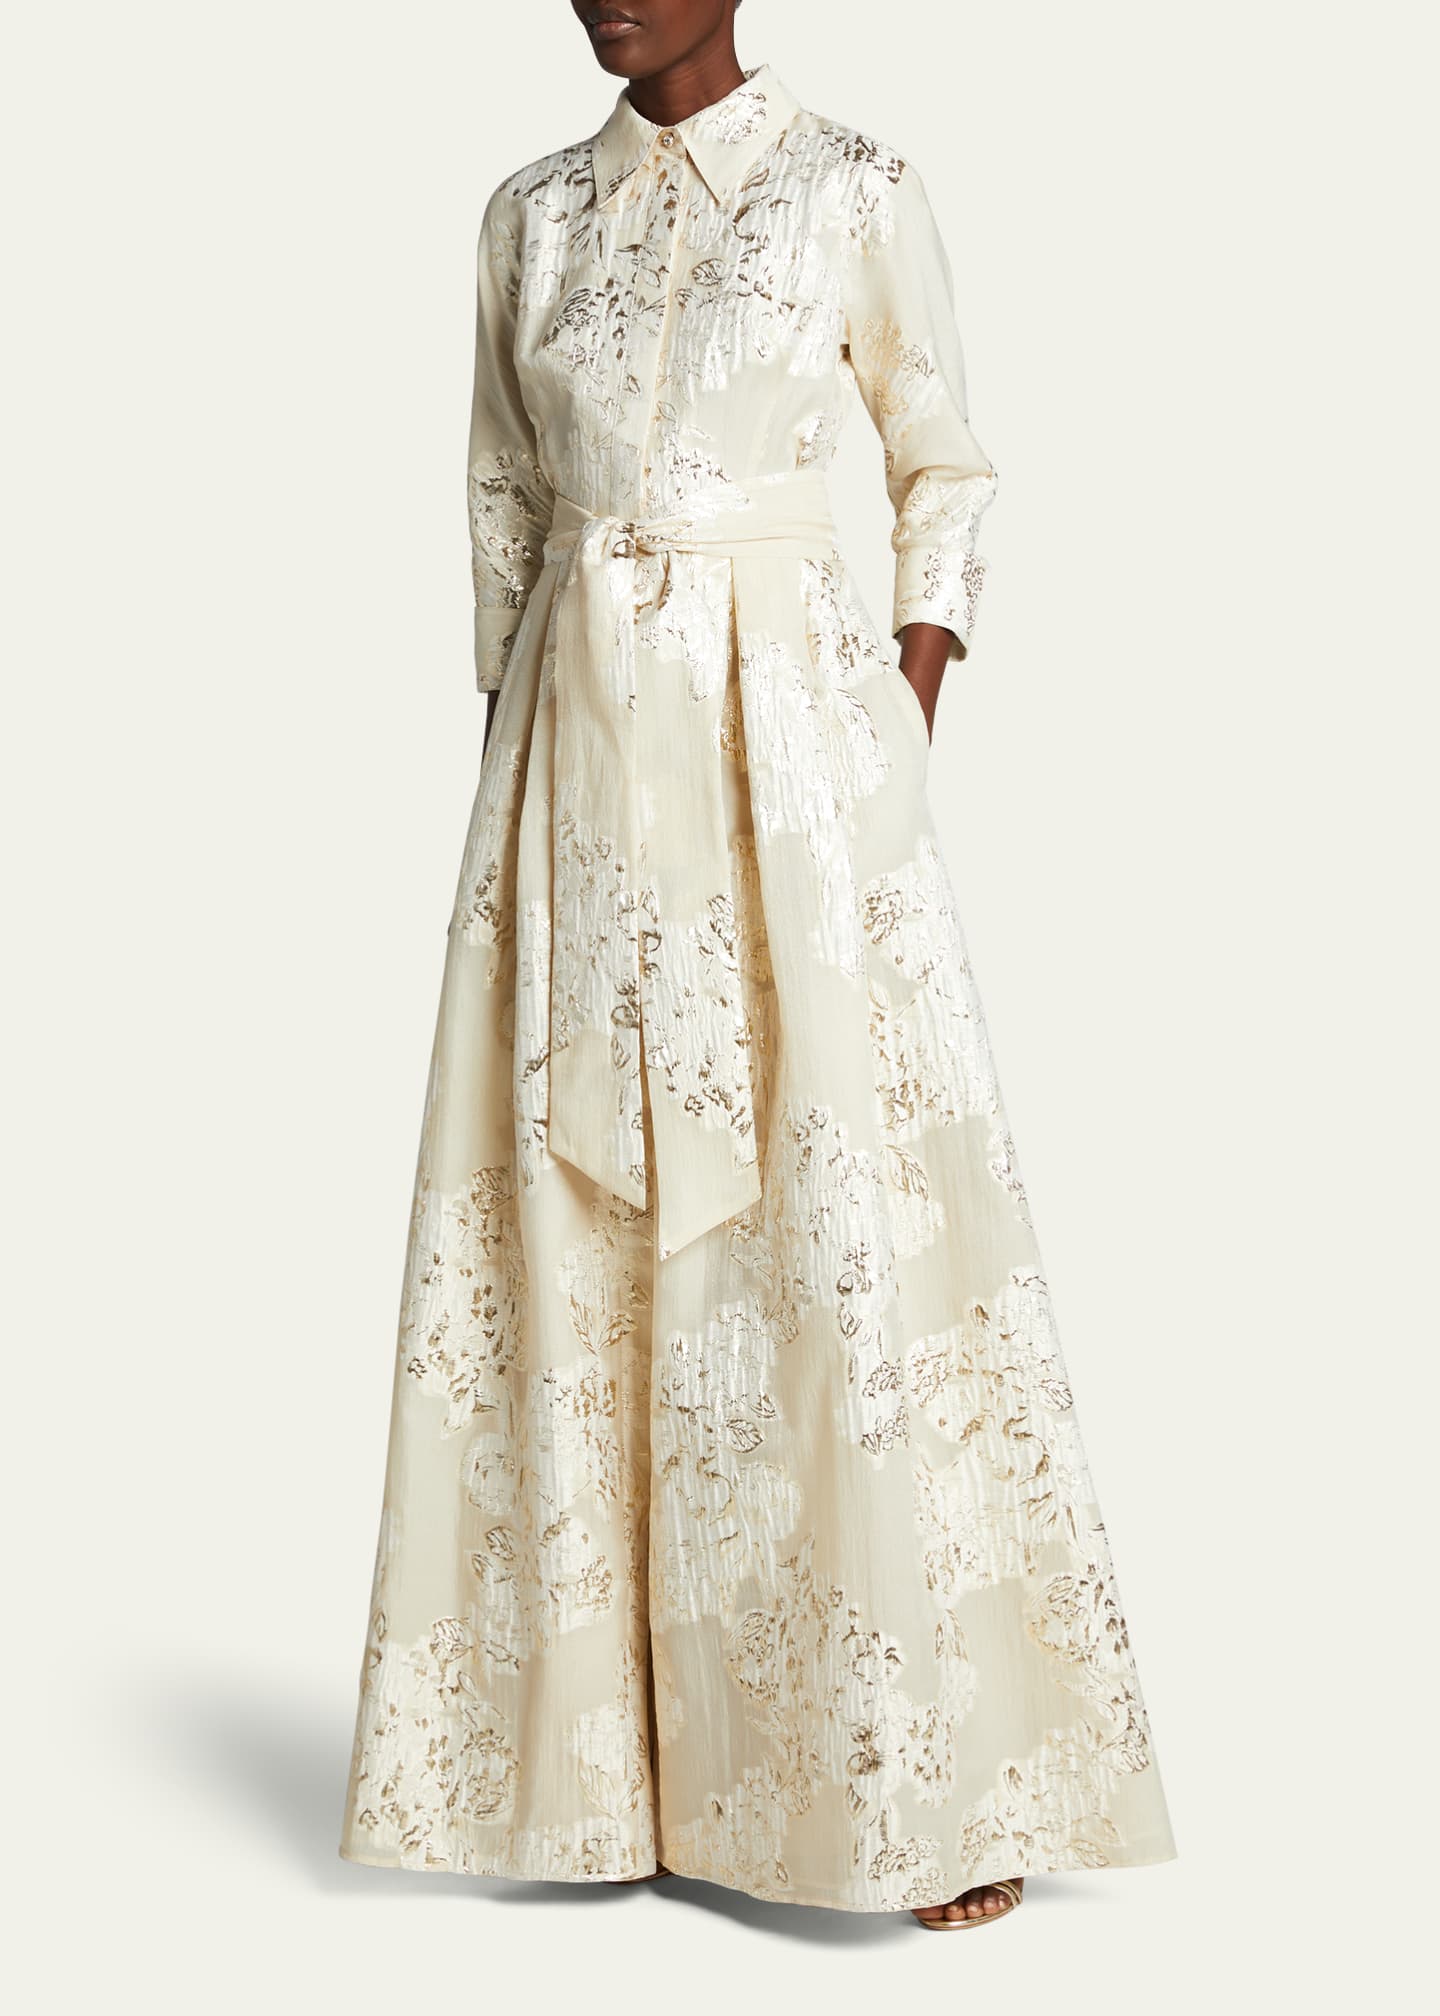 Rickie Freeman for Teri Jon Belted Jacquard Shirtdress Gown Image 4 of 5